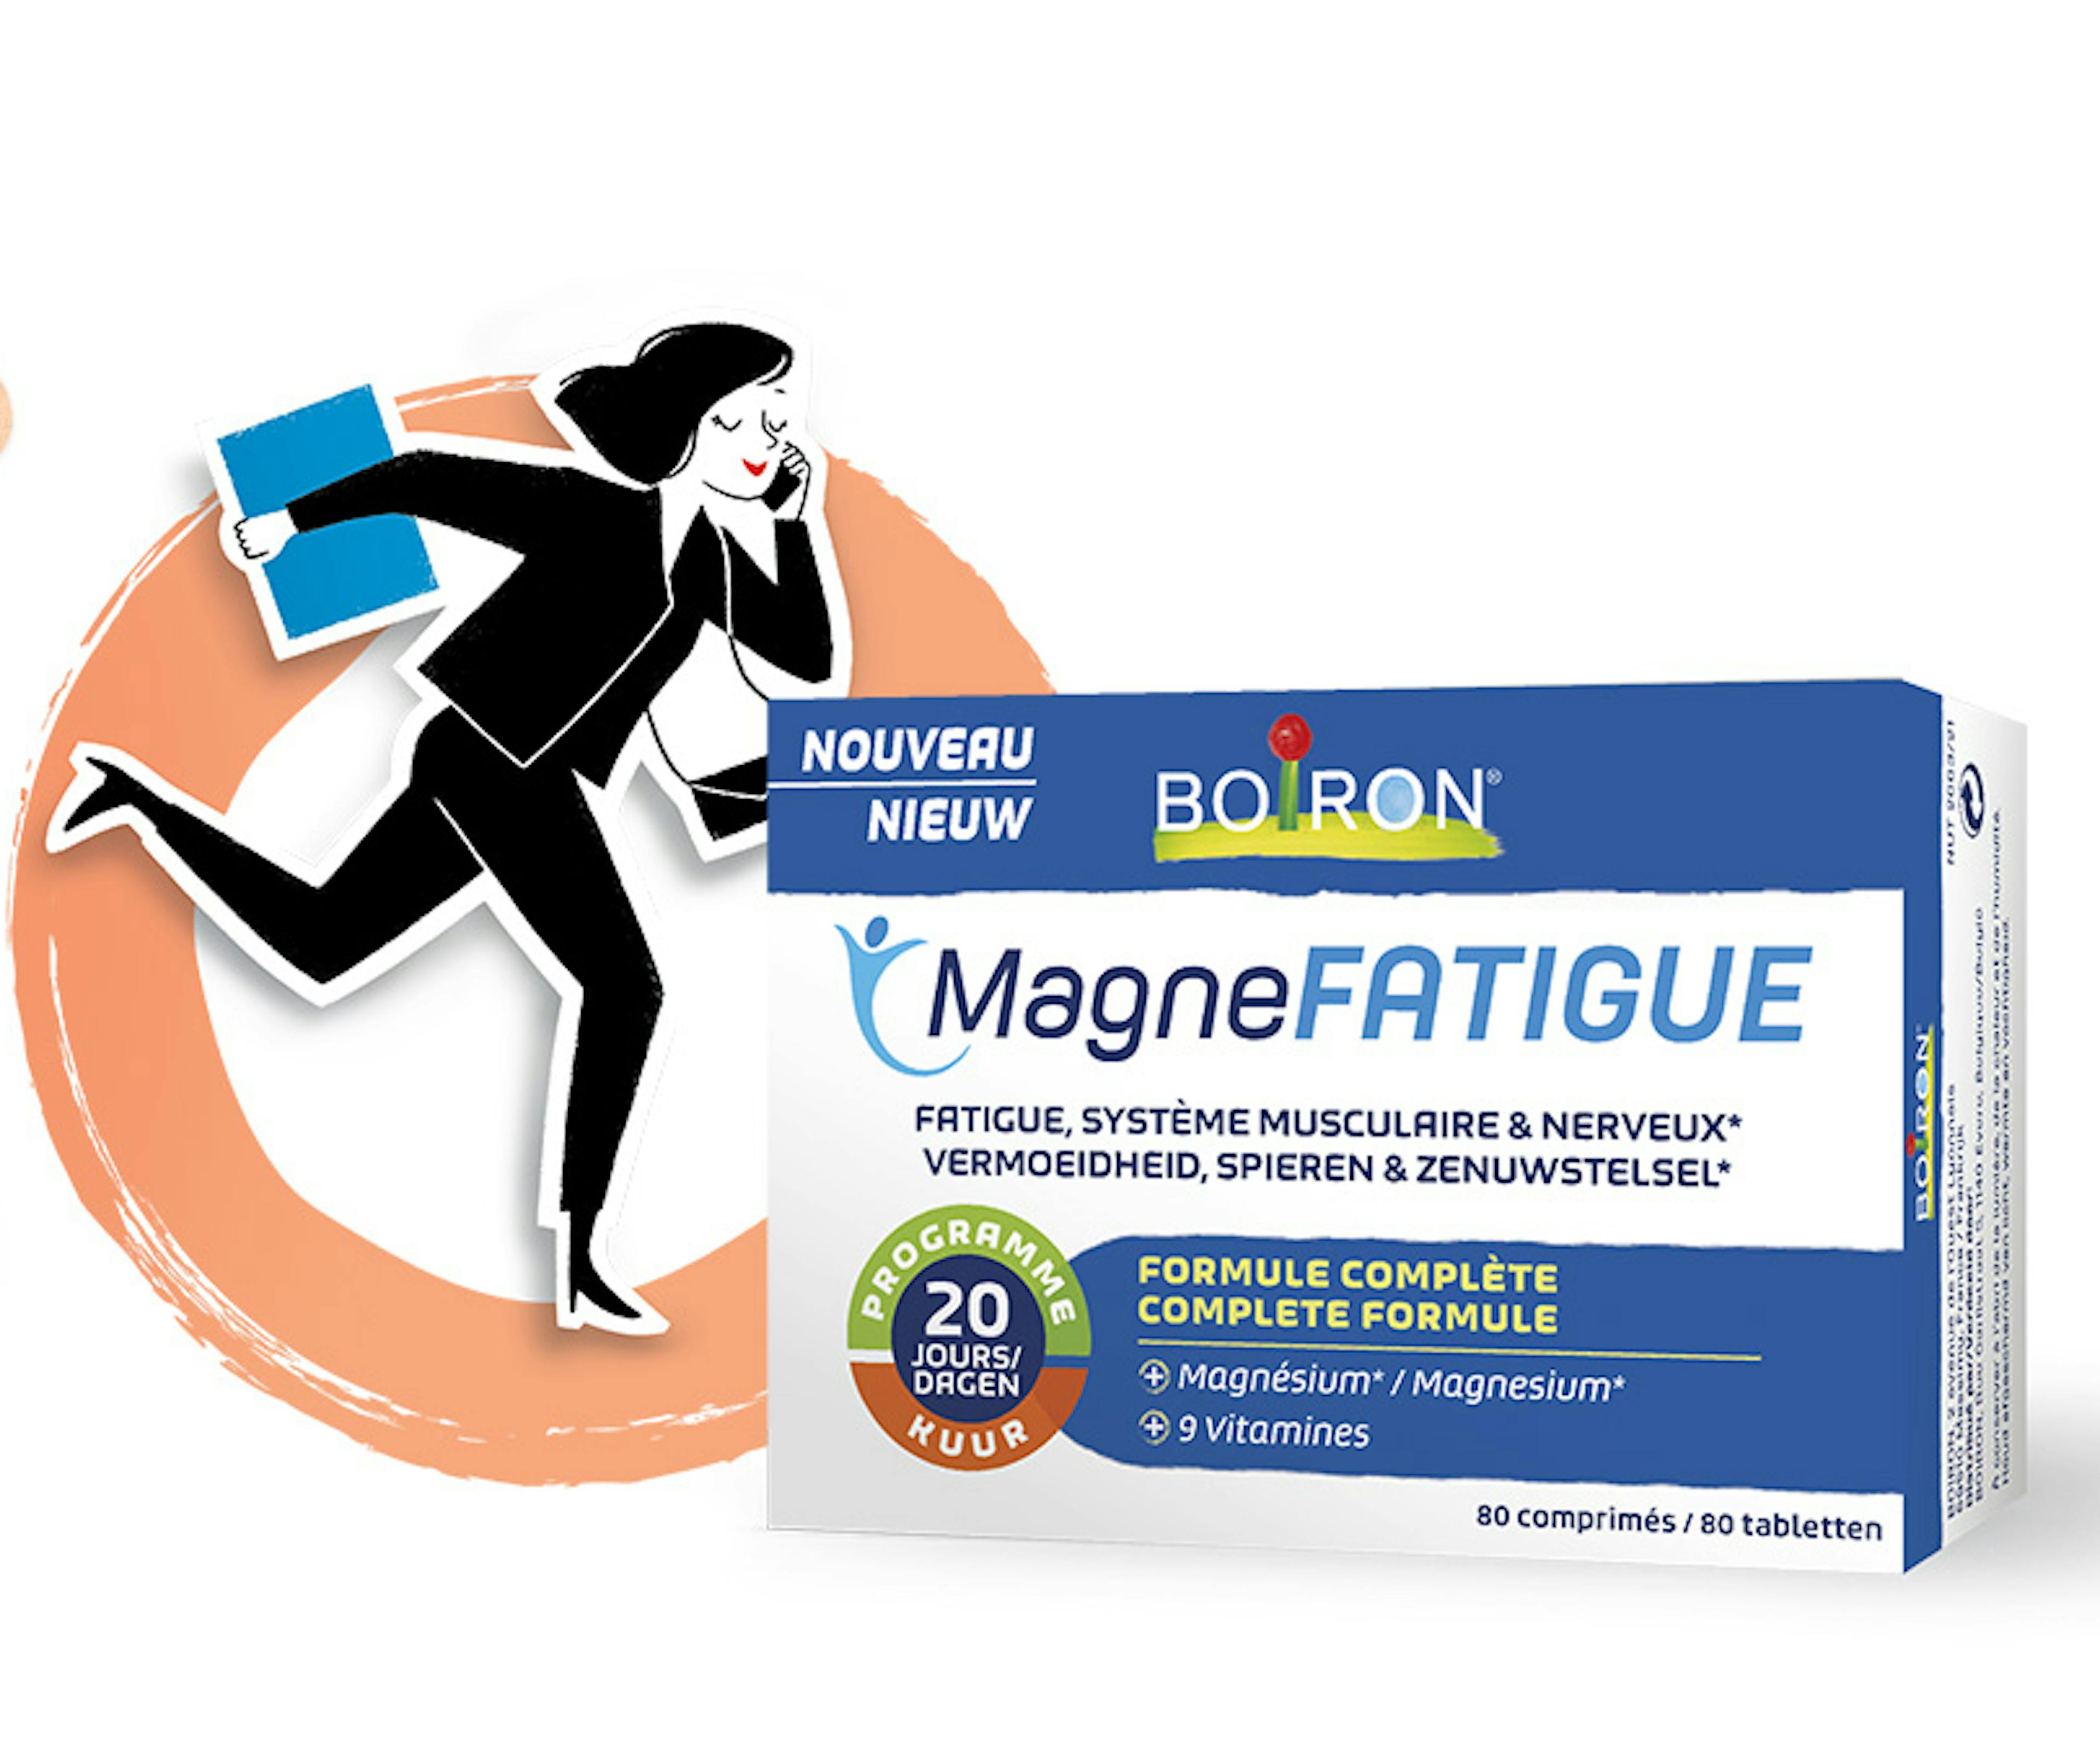 magnefatigue